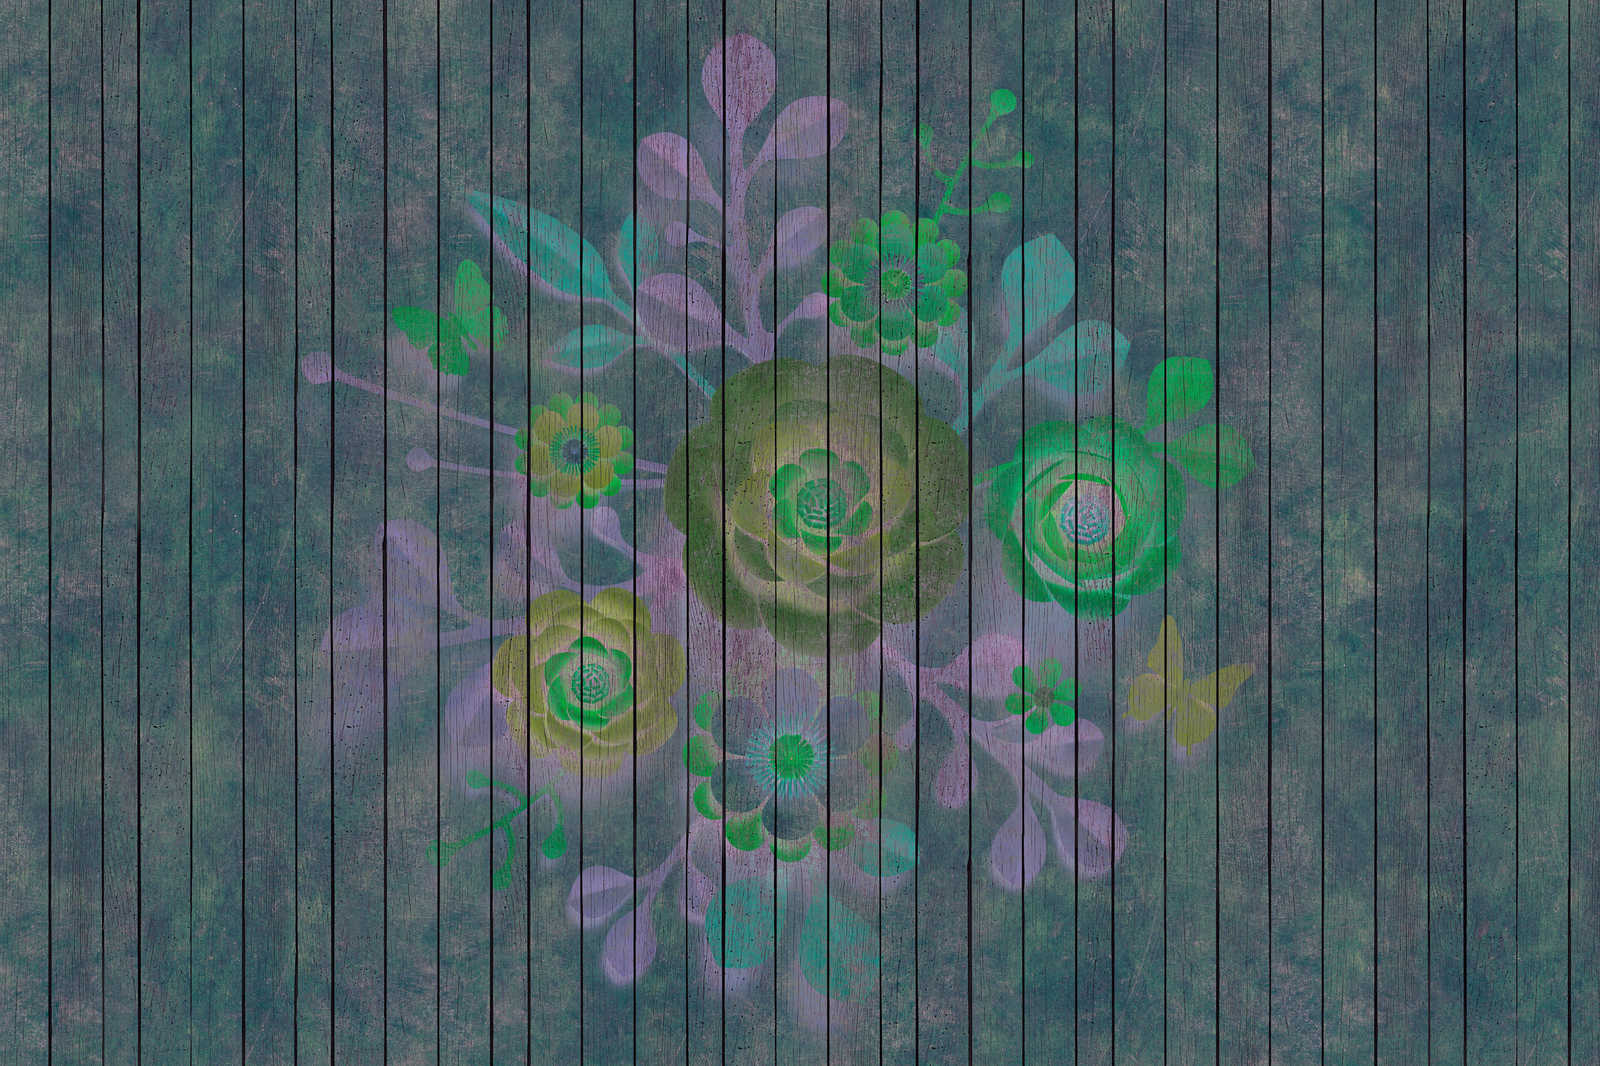             Sproeiboeket 2 - Canvas schilderij in houtpaneel structuur met bloemen op board muur - 0.90 m x 0.60 m
        